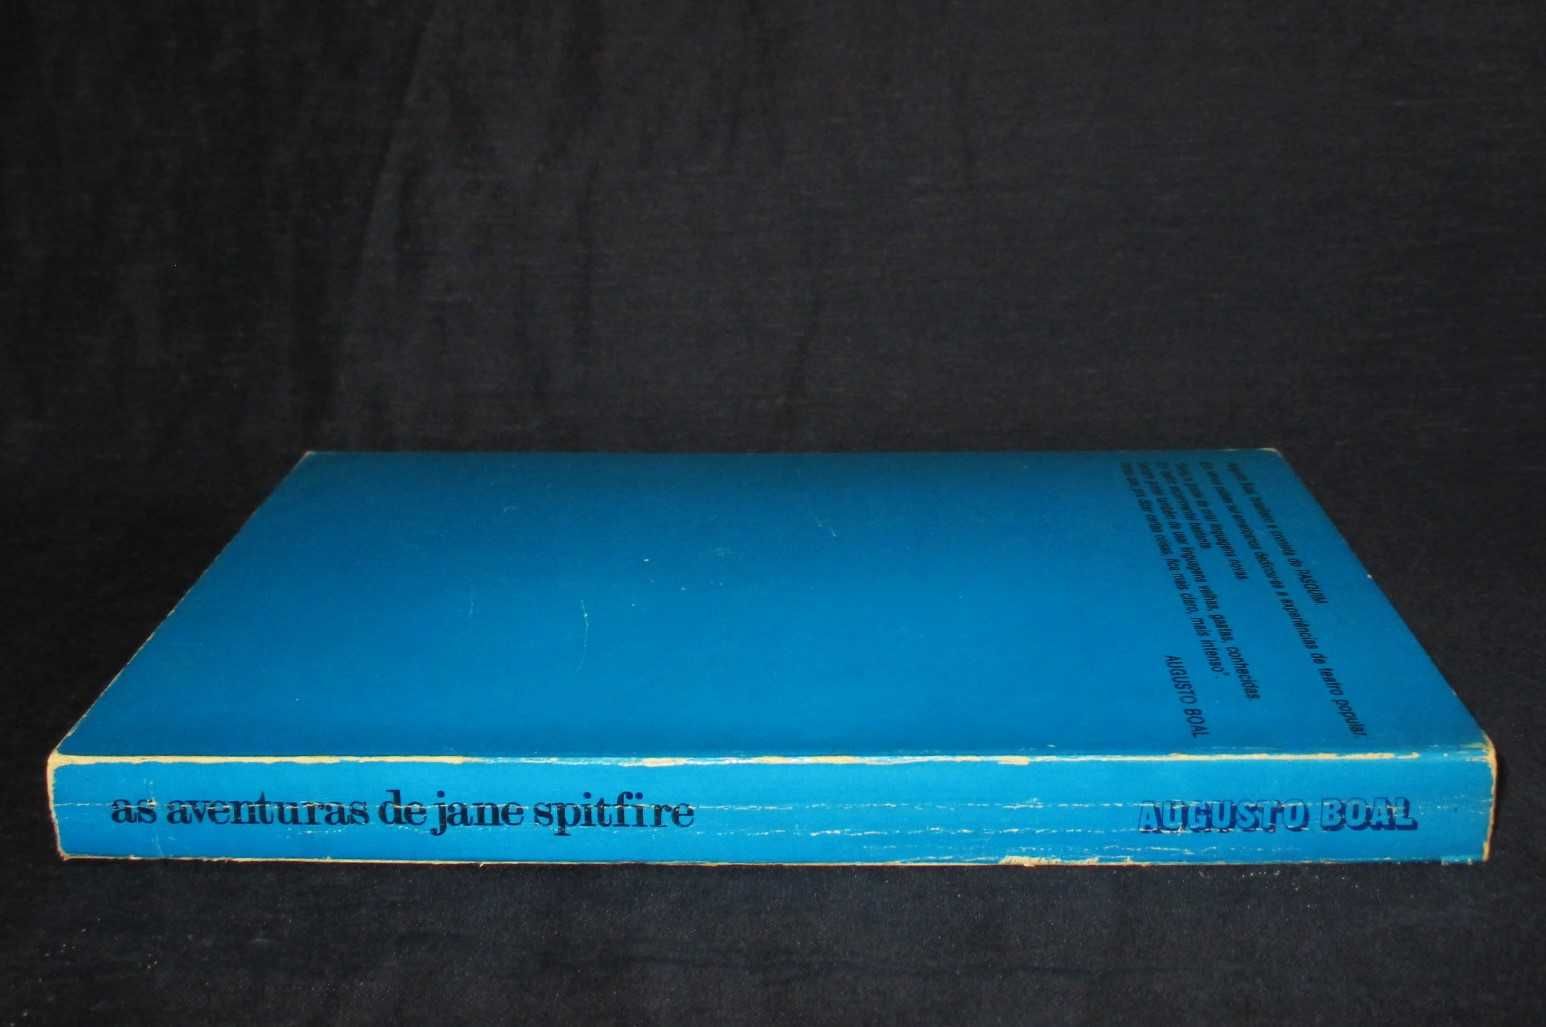 Livro A Deliciosa e Sangrenta Aventura Jane Spitfire Augusto Boal